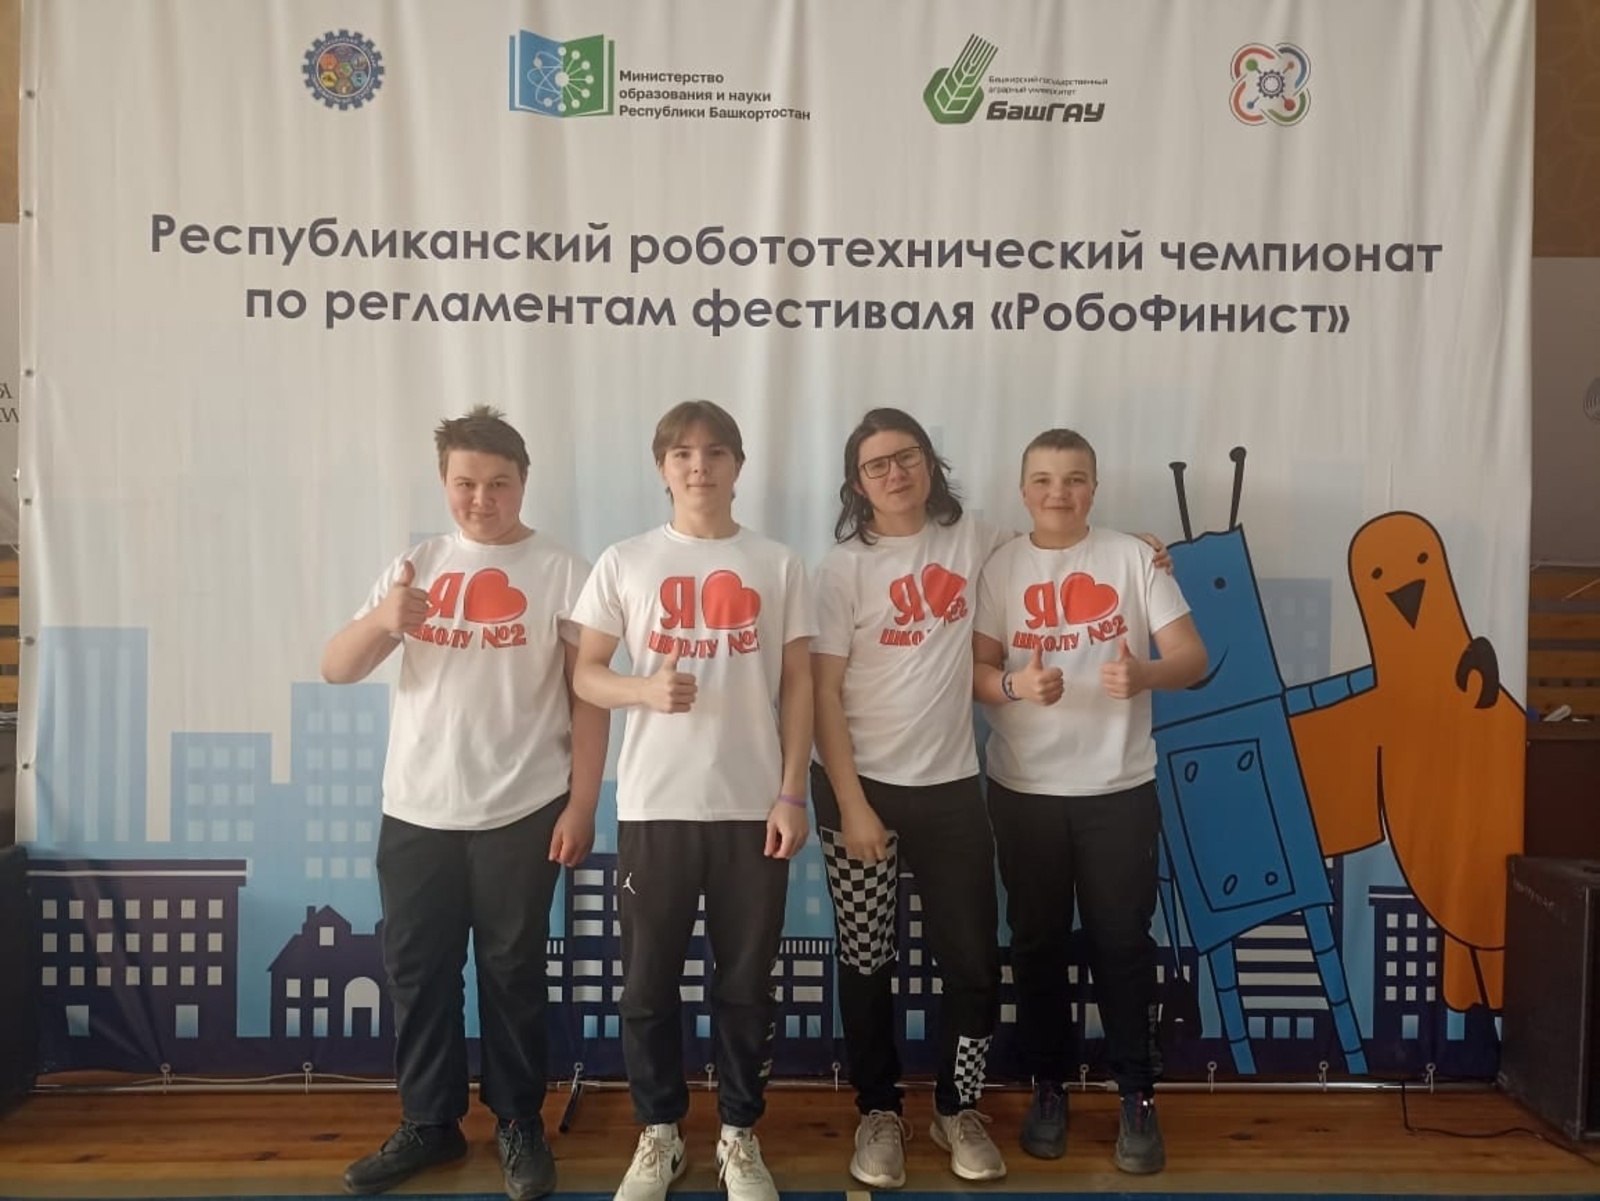 Учащиеся Краснохолмской школы №2 завоевали 2 место в фестивале робототехники «РобоФинист»